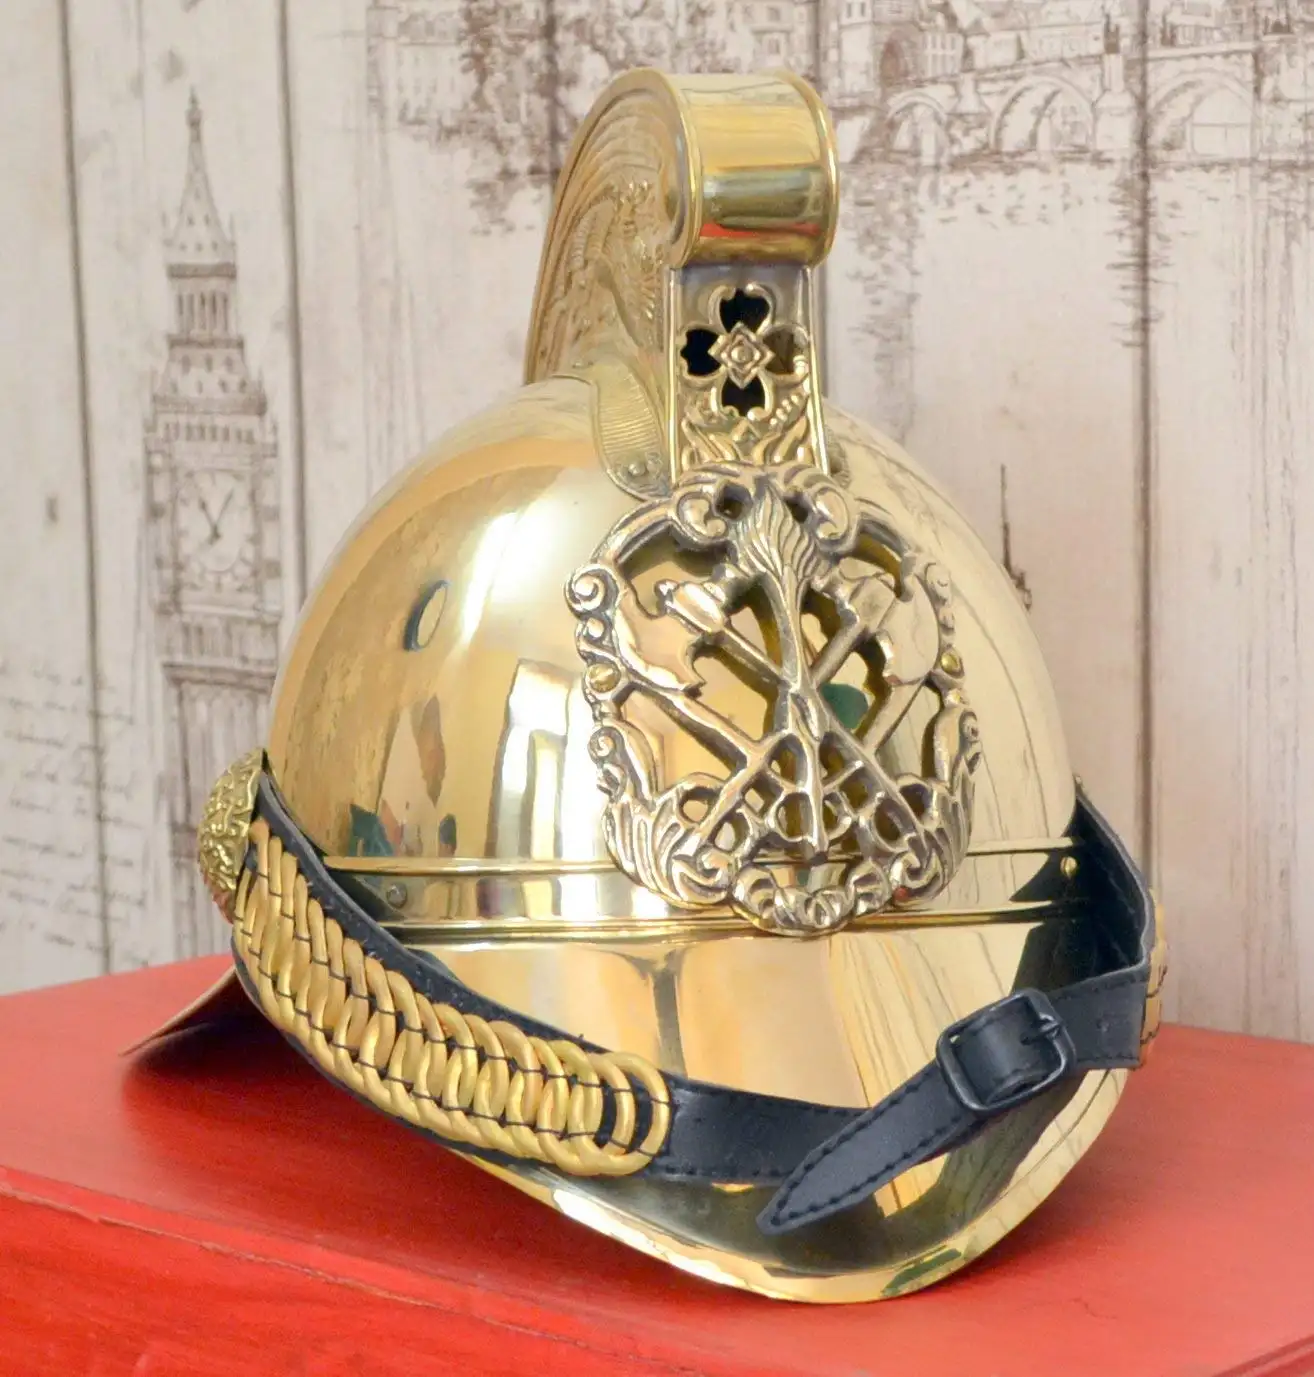 Calvin Handicrafts "Casco de bombero británico antiguo Gorra de seguridad contra incendios antigua de latón con forro